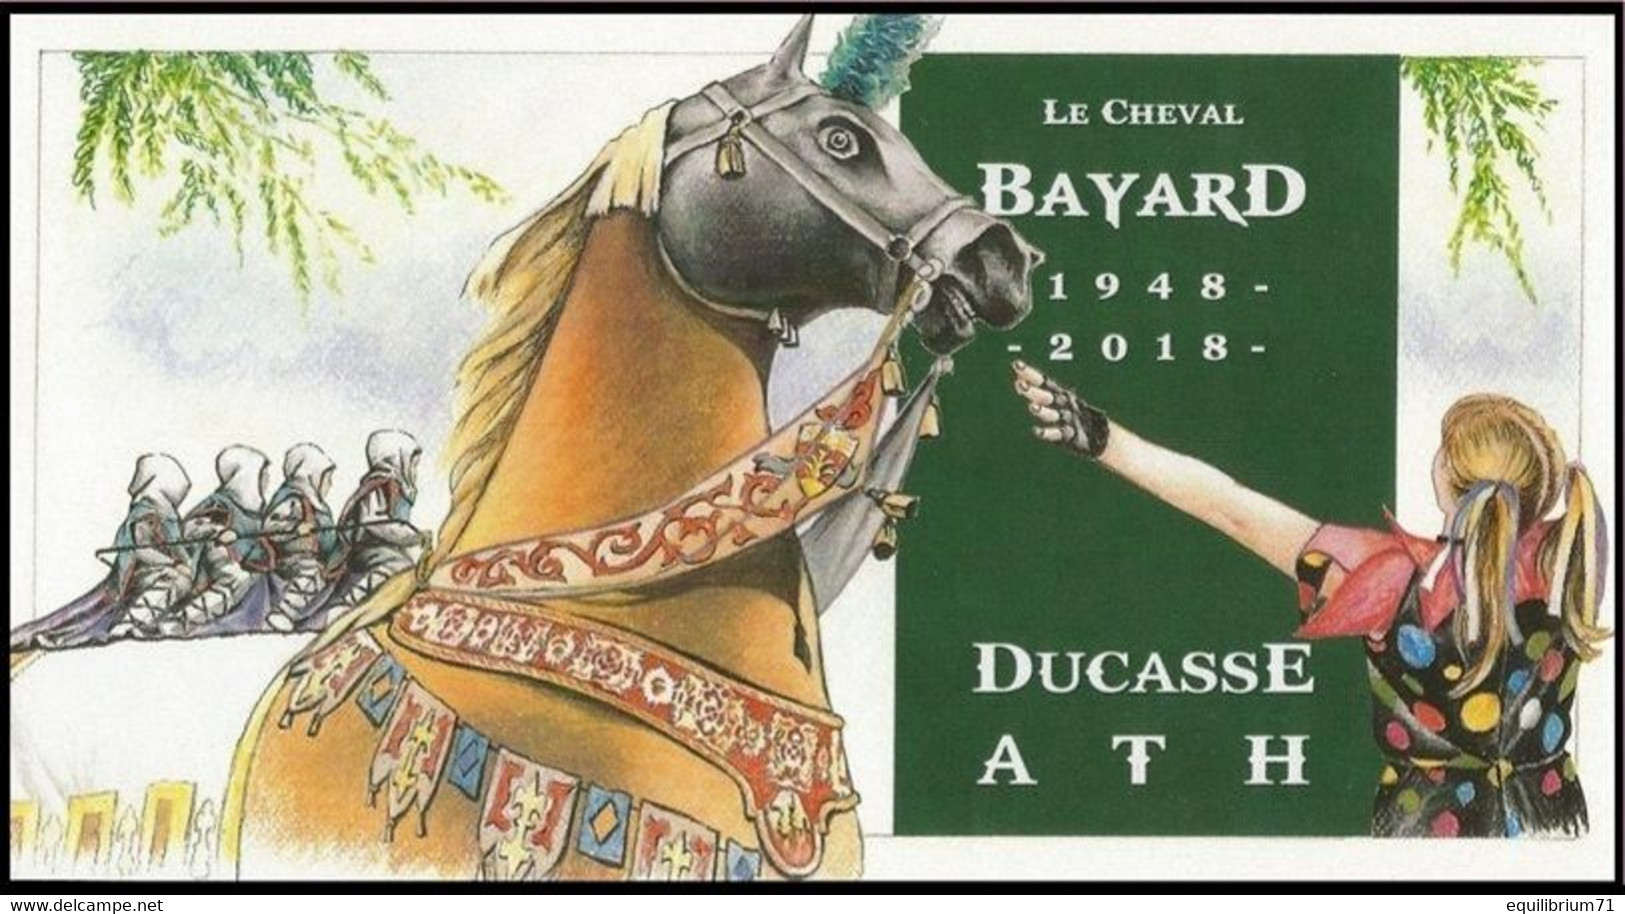 CS/HK° - Carte Souvenir/Herdenkingskaart - Ath -  1948/2018 - Le Cheval Bayard - SIGNÉ/GETEKEND: Christine Carles - Briefe U. Dokumente